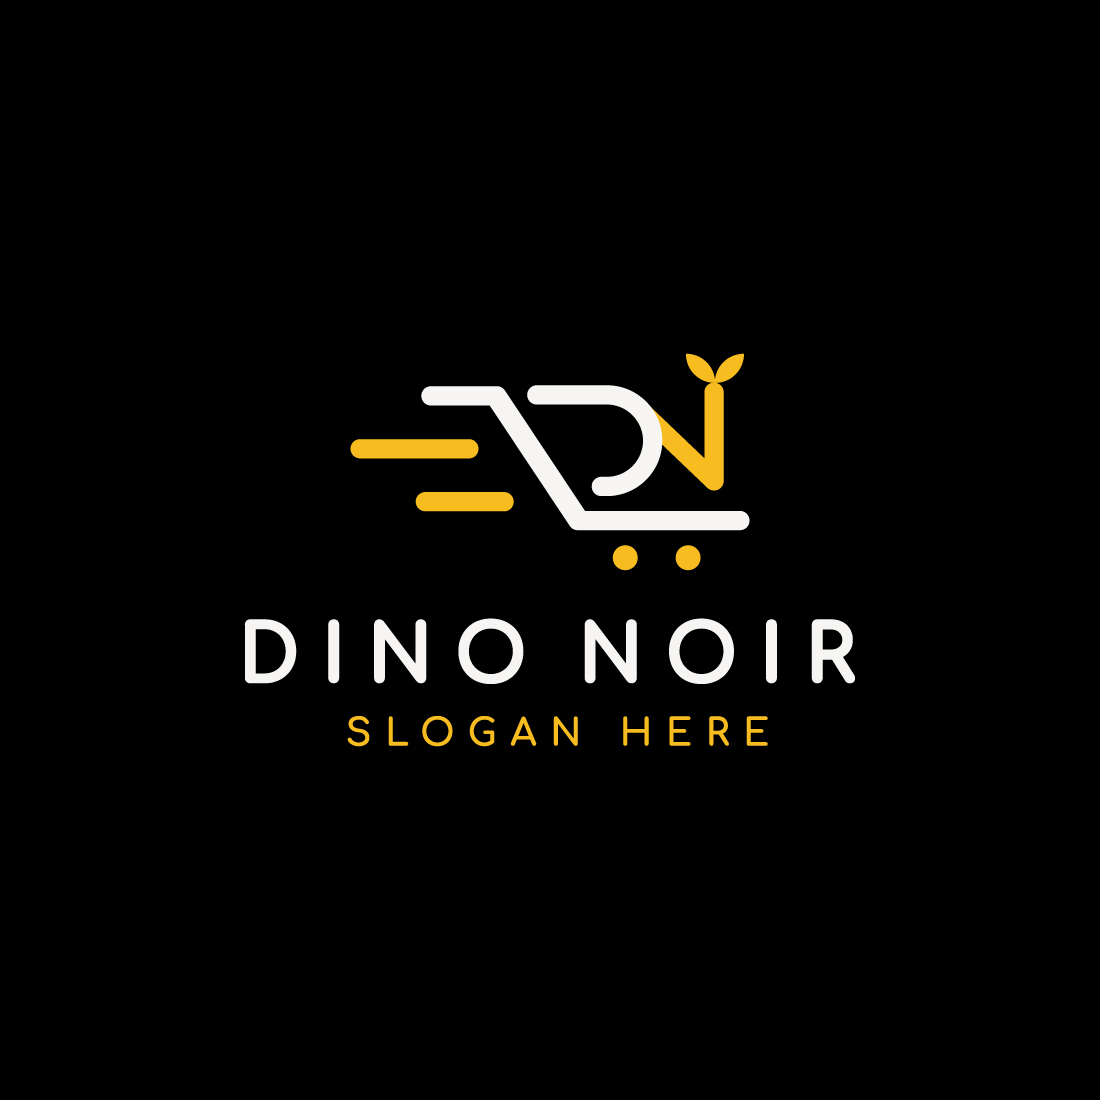 Letter D & N Shopping Cart Logo cover image.